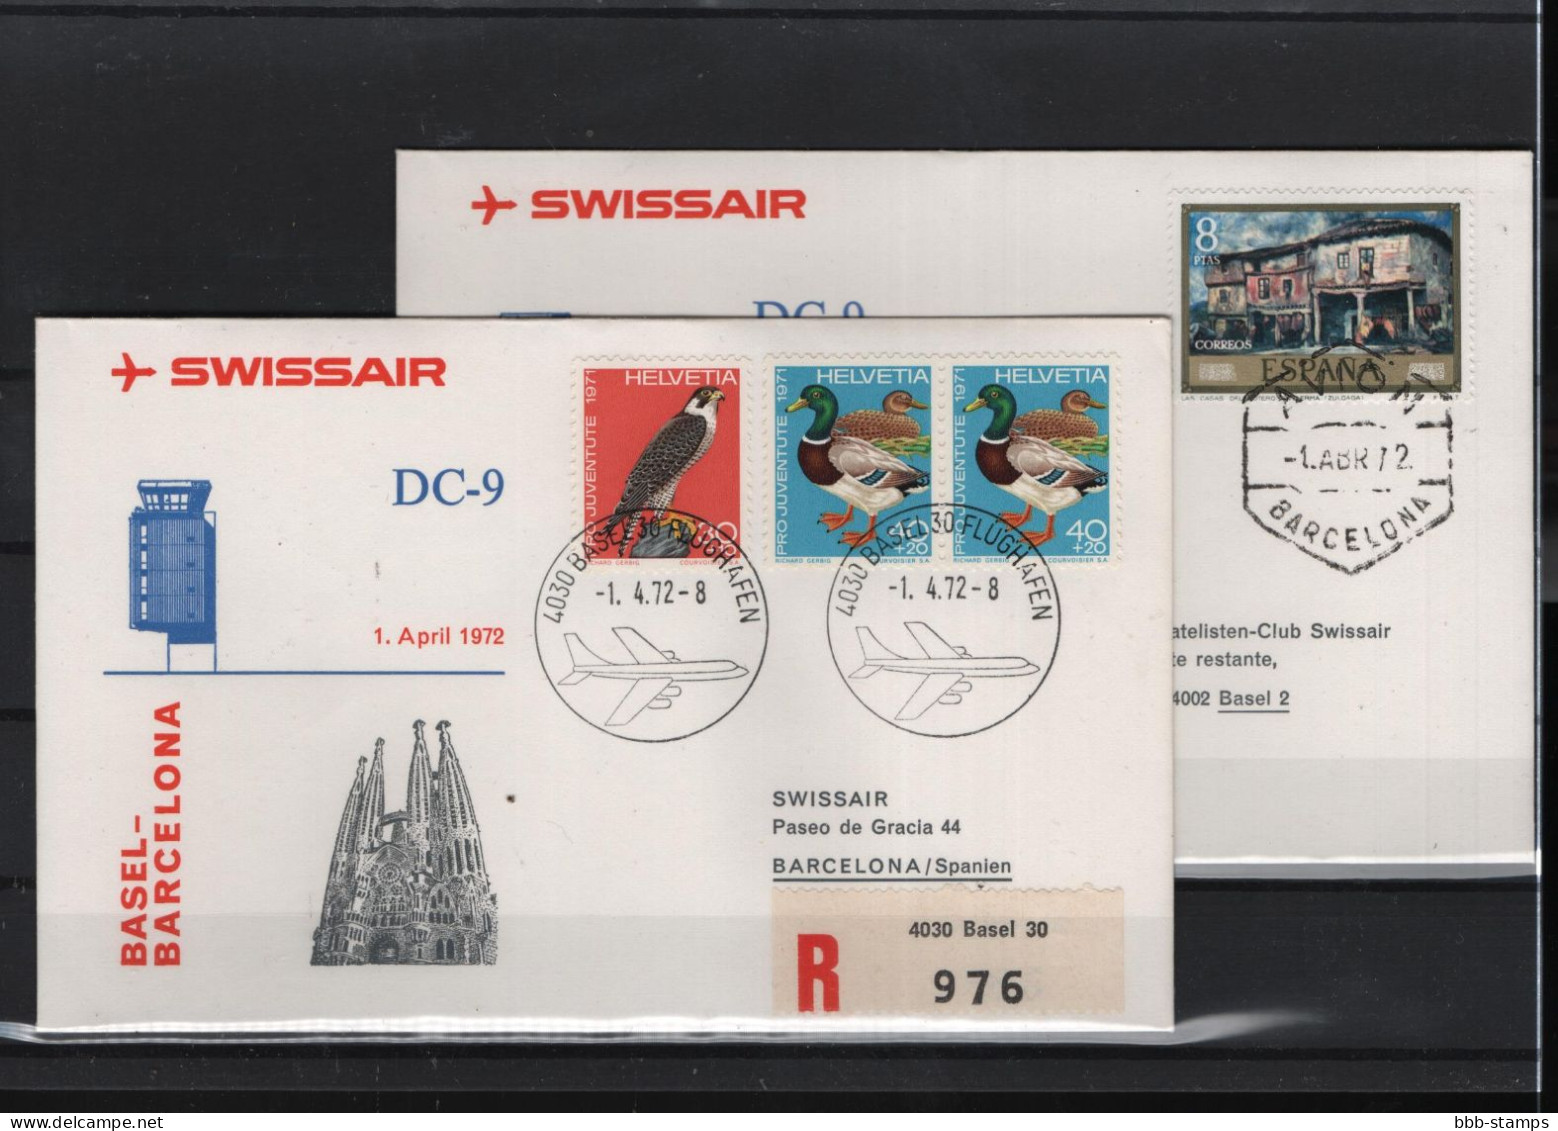 Schweiz Luftpost FFC Swissair  1.4.1972 Basel -  Barcelona - First Flight Covers